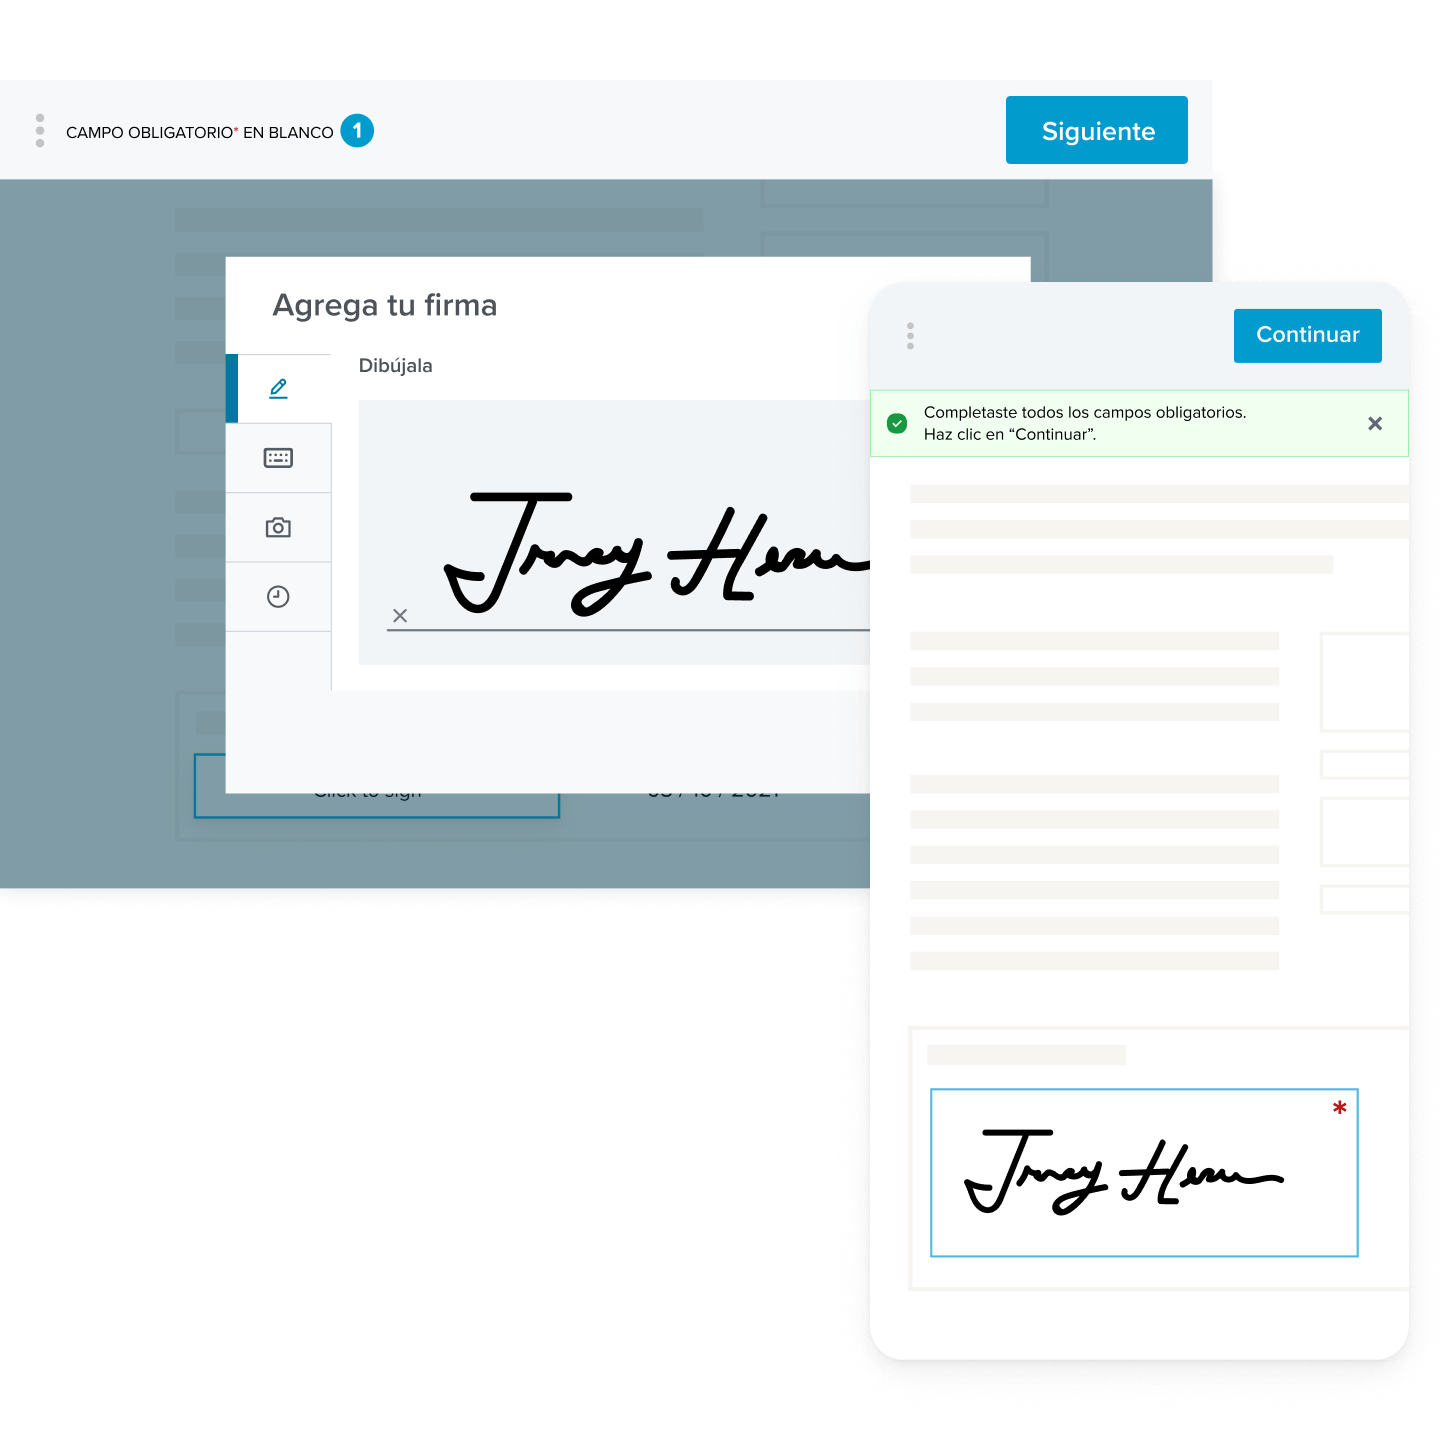 La interfaz de firma electrónica, que muestra una firma que se ha agregado a un formulario, en dispositivos móviles y de escritorio.